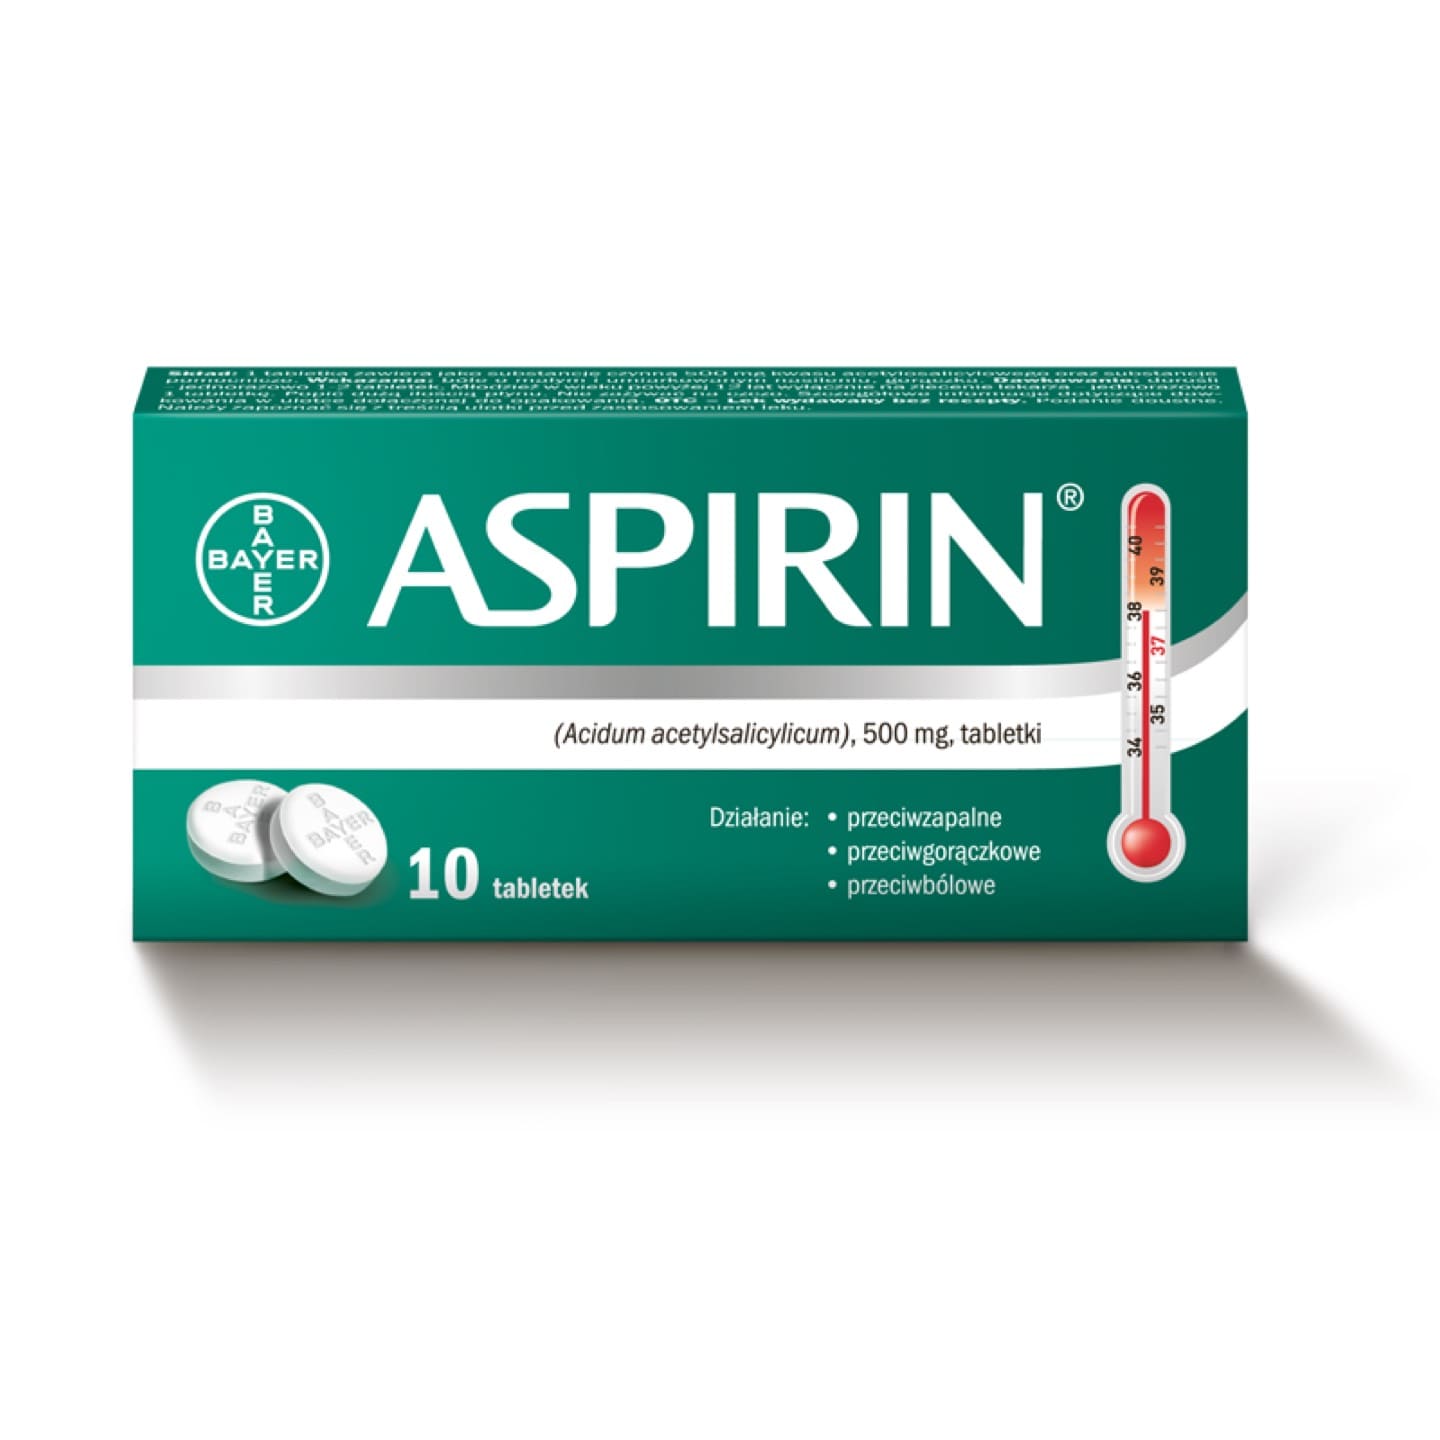  Aspirin